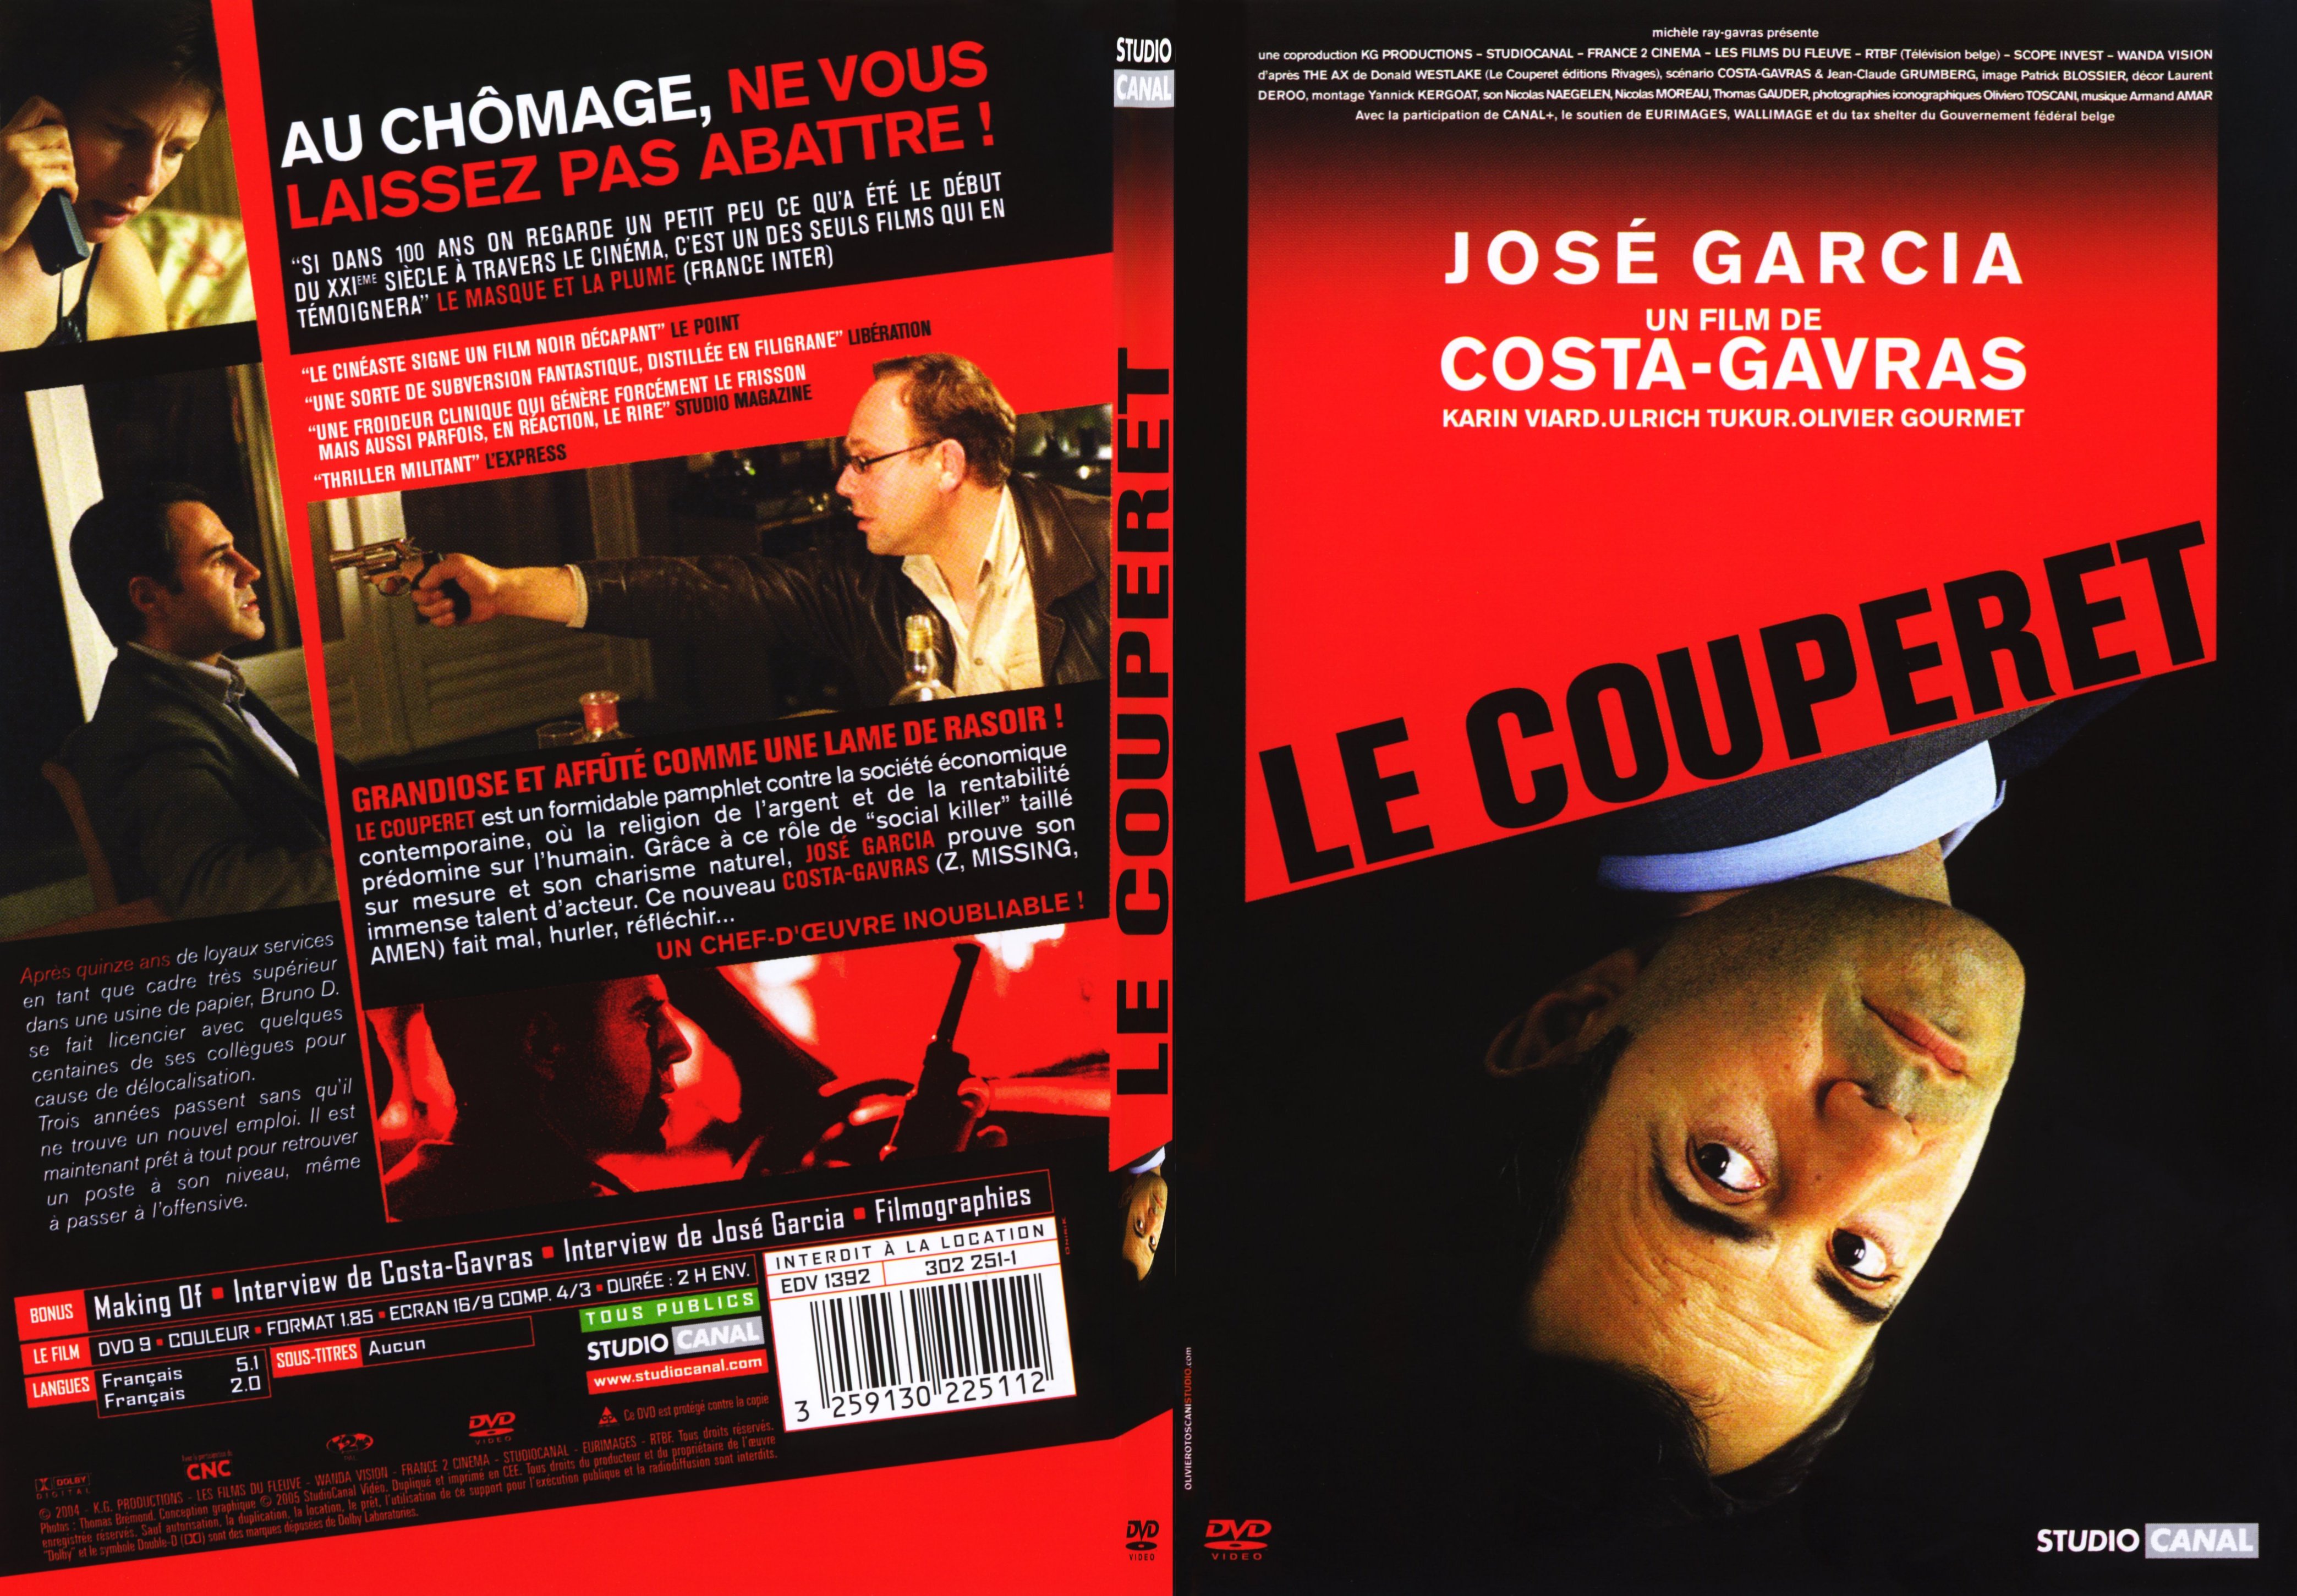 Jaquette DVD Le couperet - SLIM